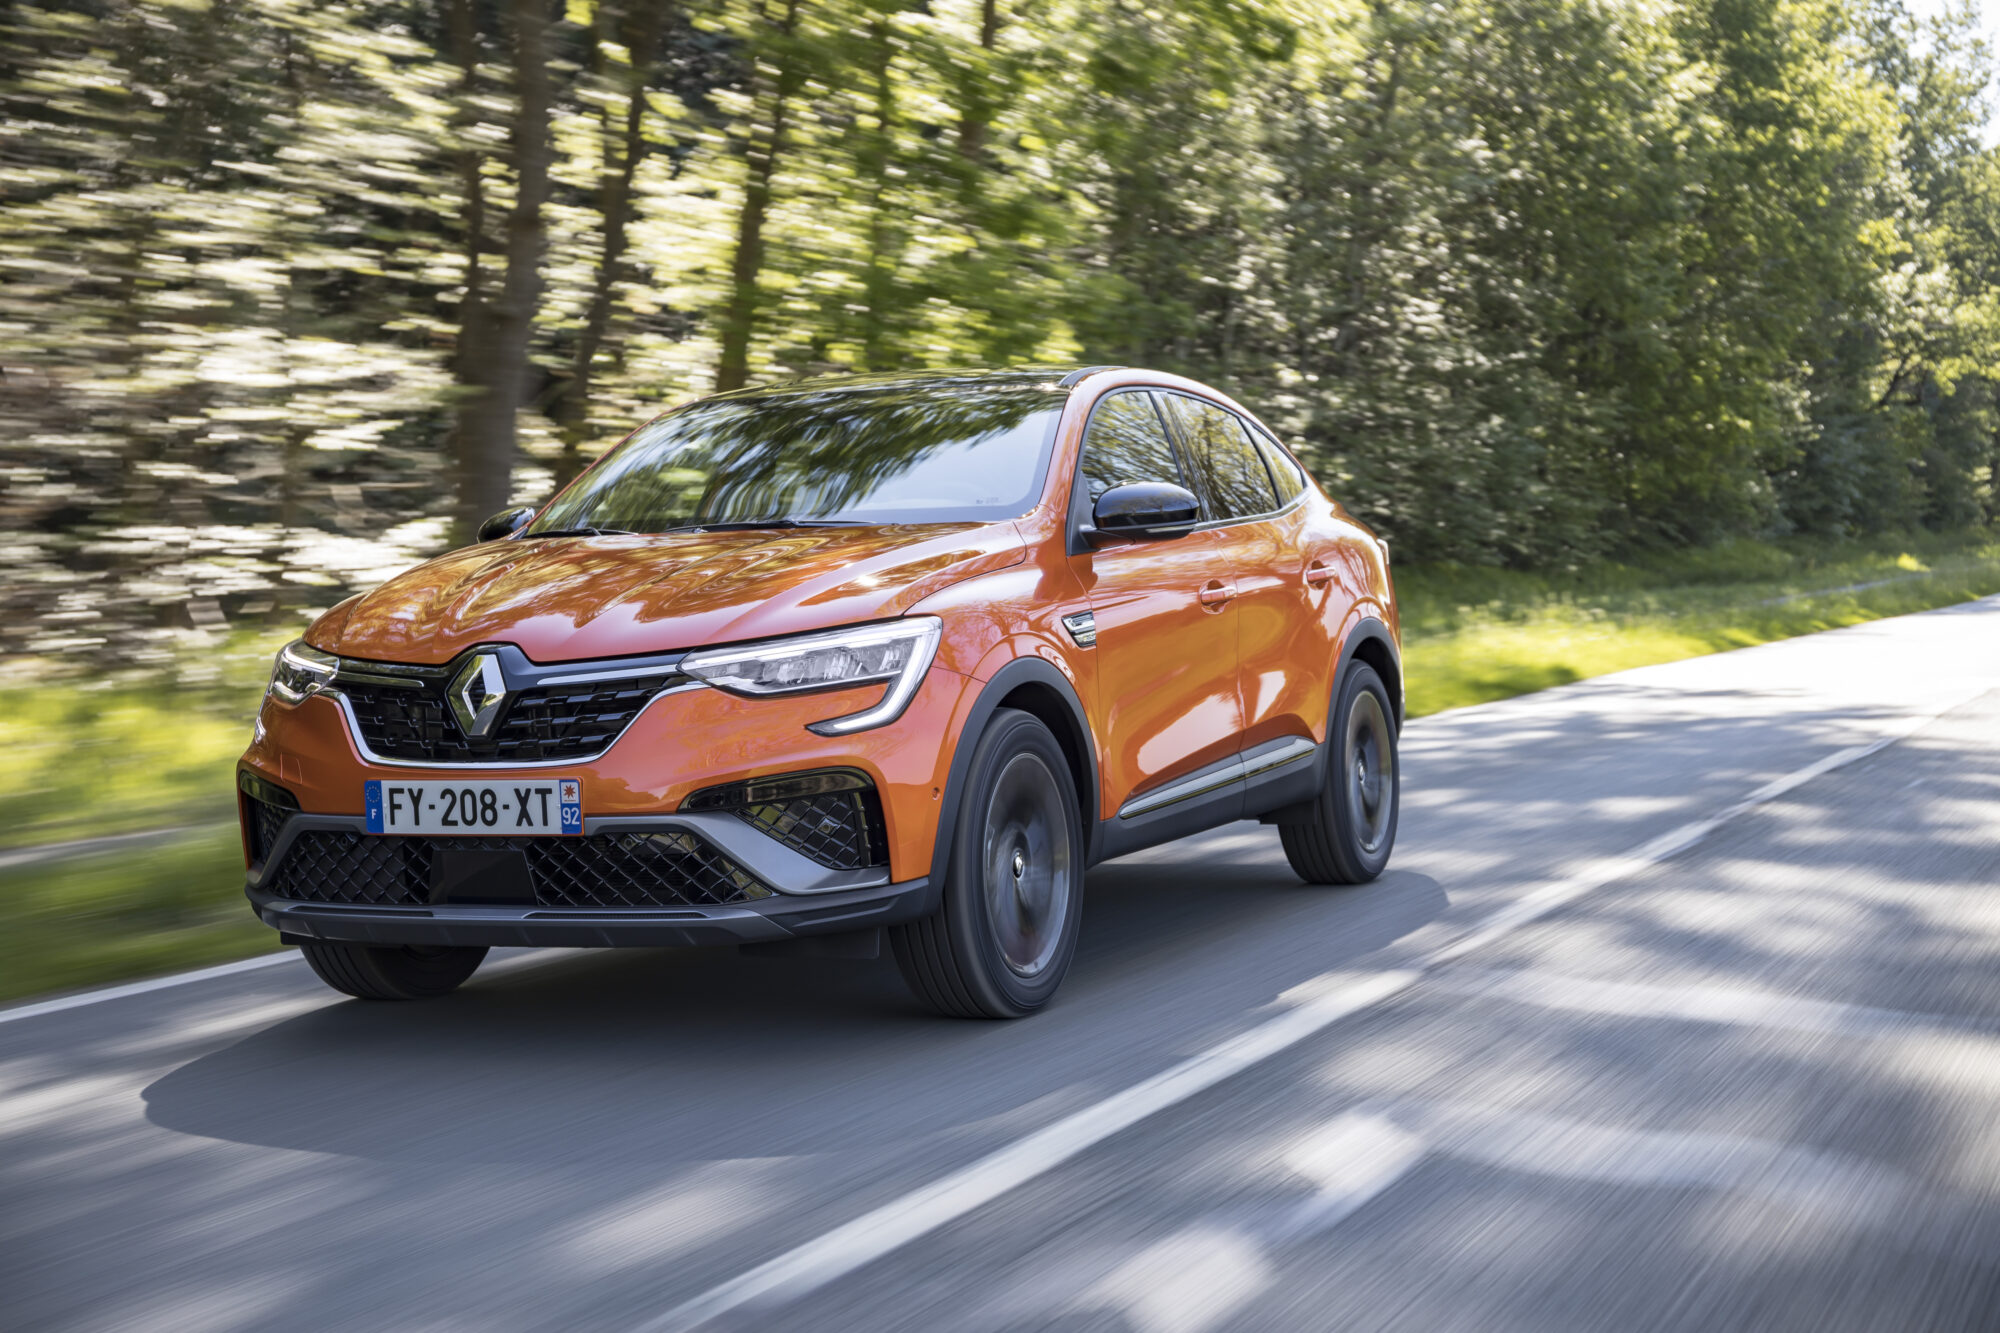 2021 - New Renault ARKANA E-TECH test-drives